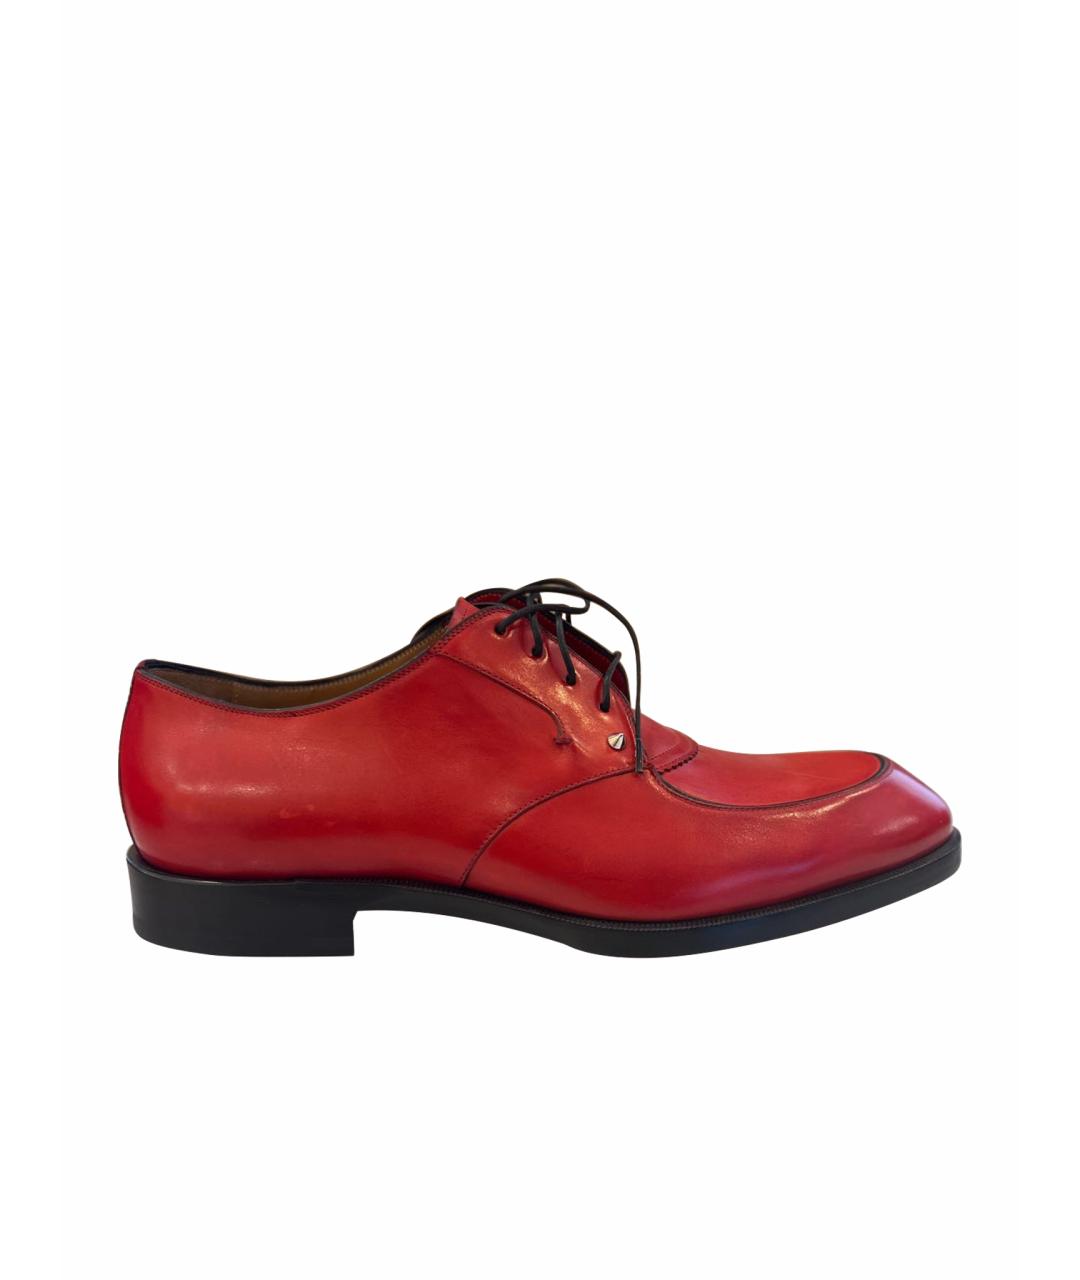 CHRISTIAN LOUBOUTIN Красные кожаные туфли, фото 1